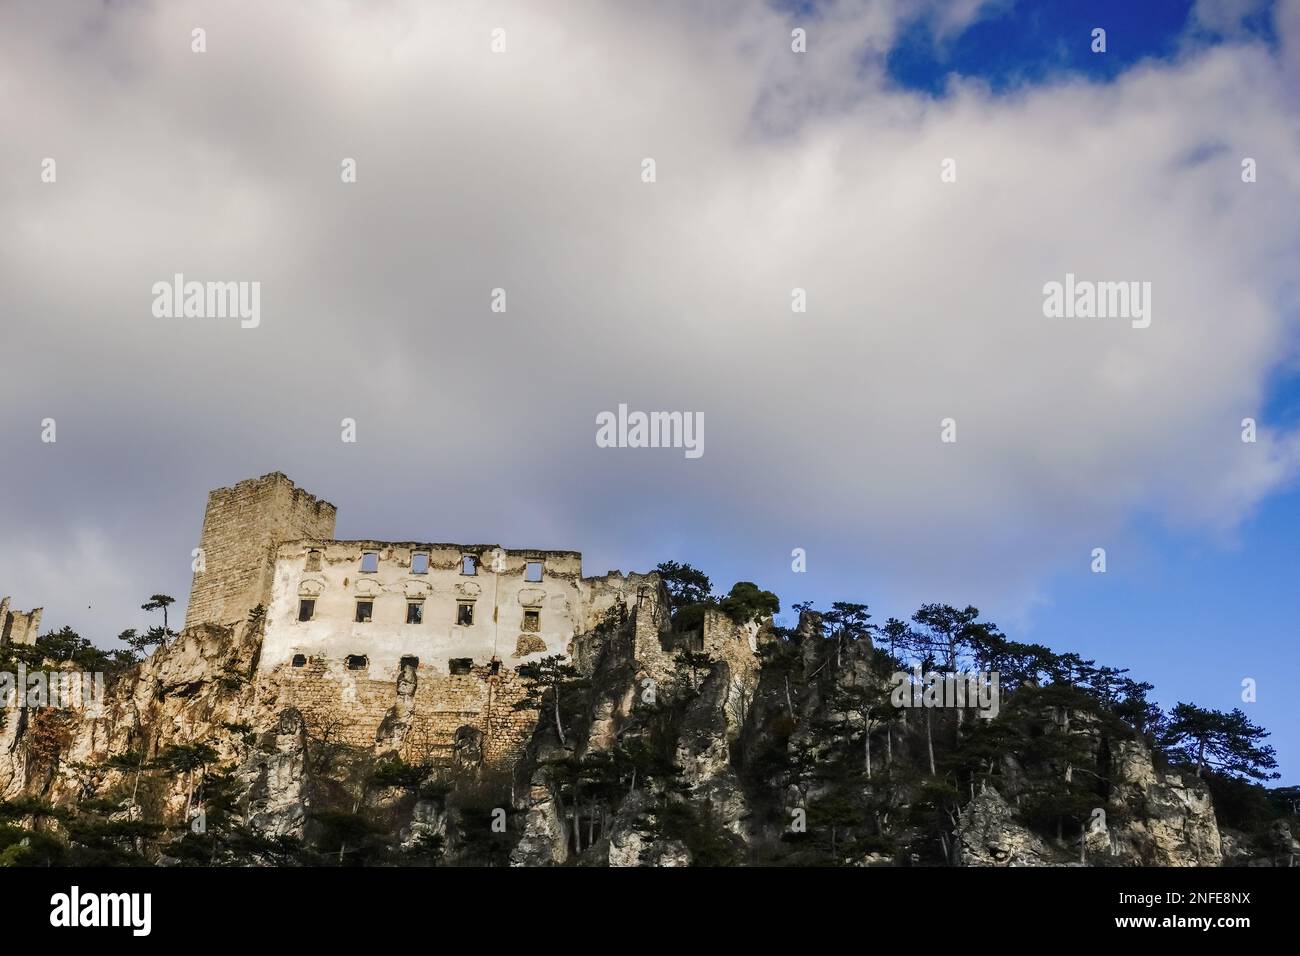 splendido castello senza tetto su una montagna con cielo blu e nuvole bianche Foto Stock